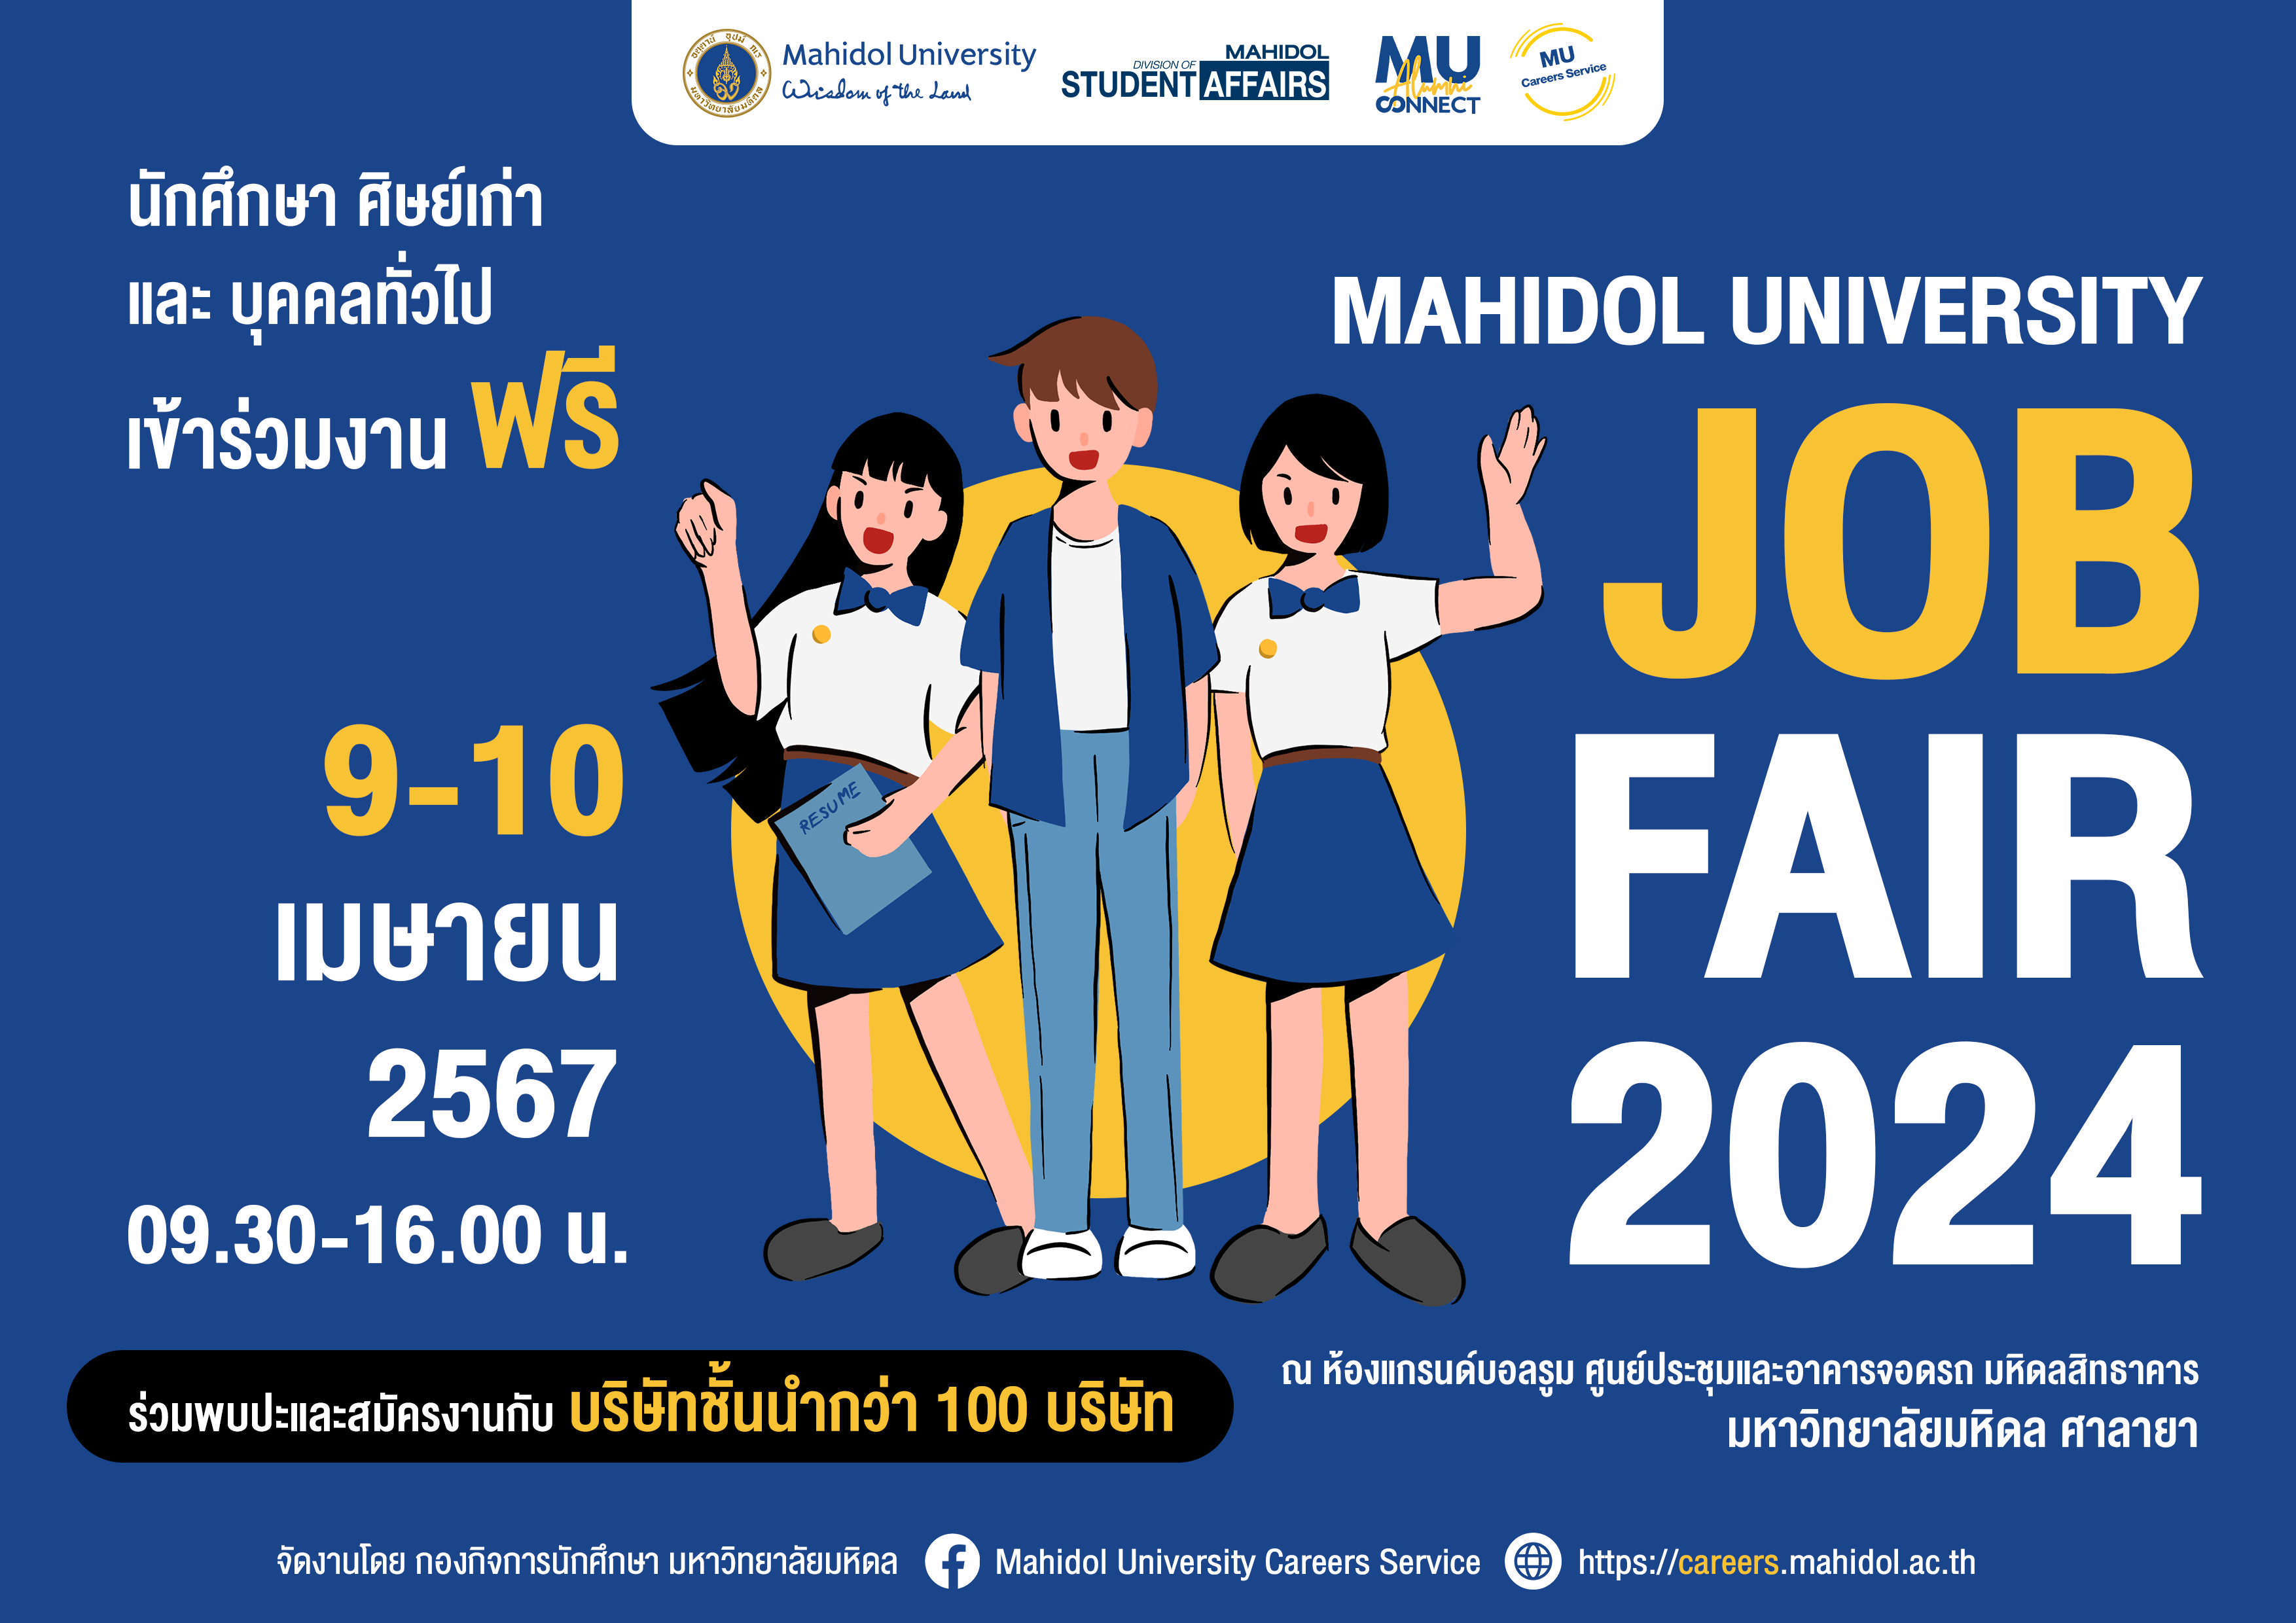 ม.มหิดล ร่วมกับ 100 บริษัทชั้นนำทั่วประเทศ จัดโครงการ Mahidol University Job Fair 2024